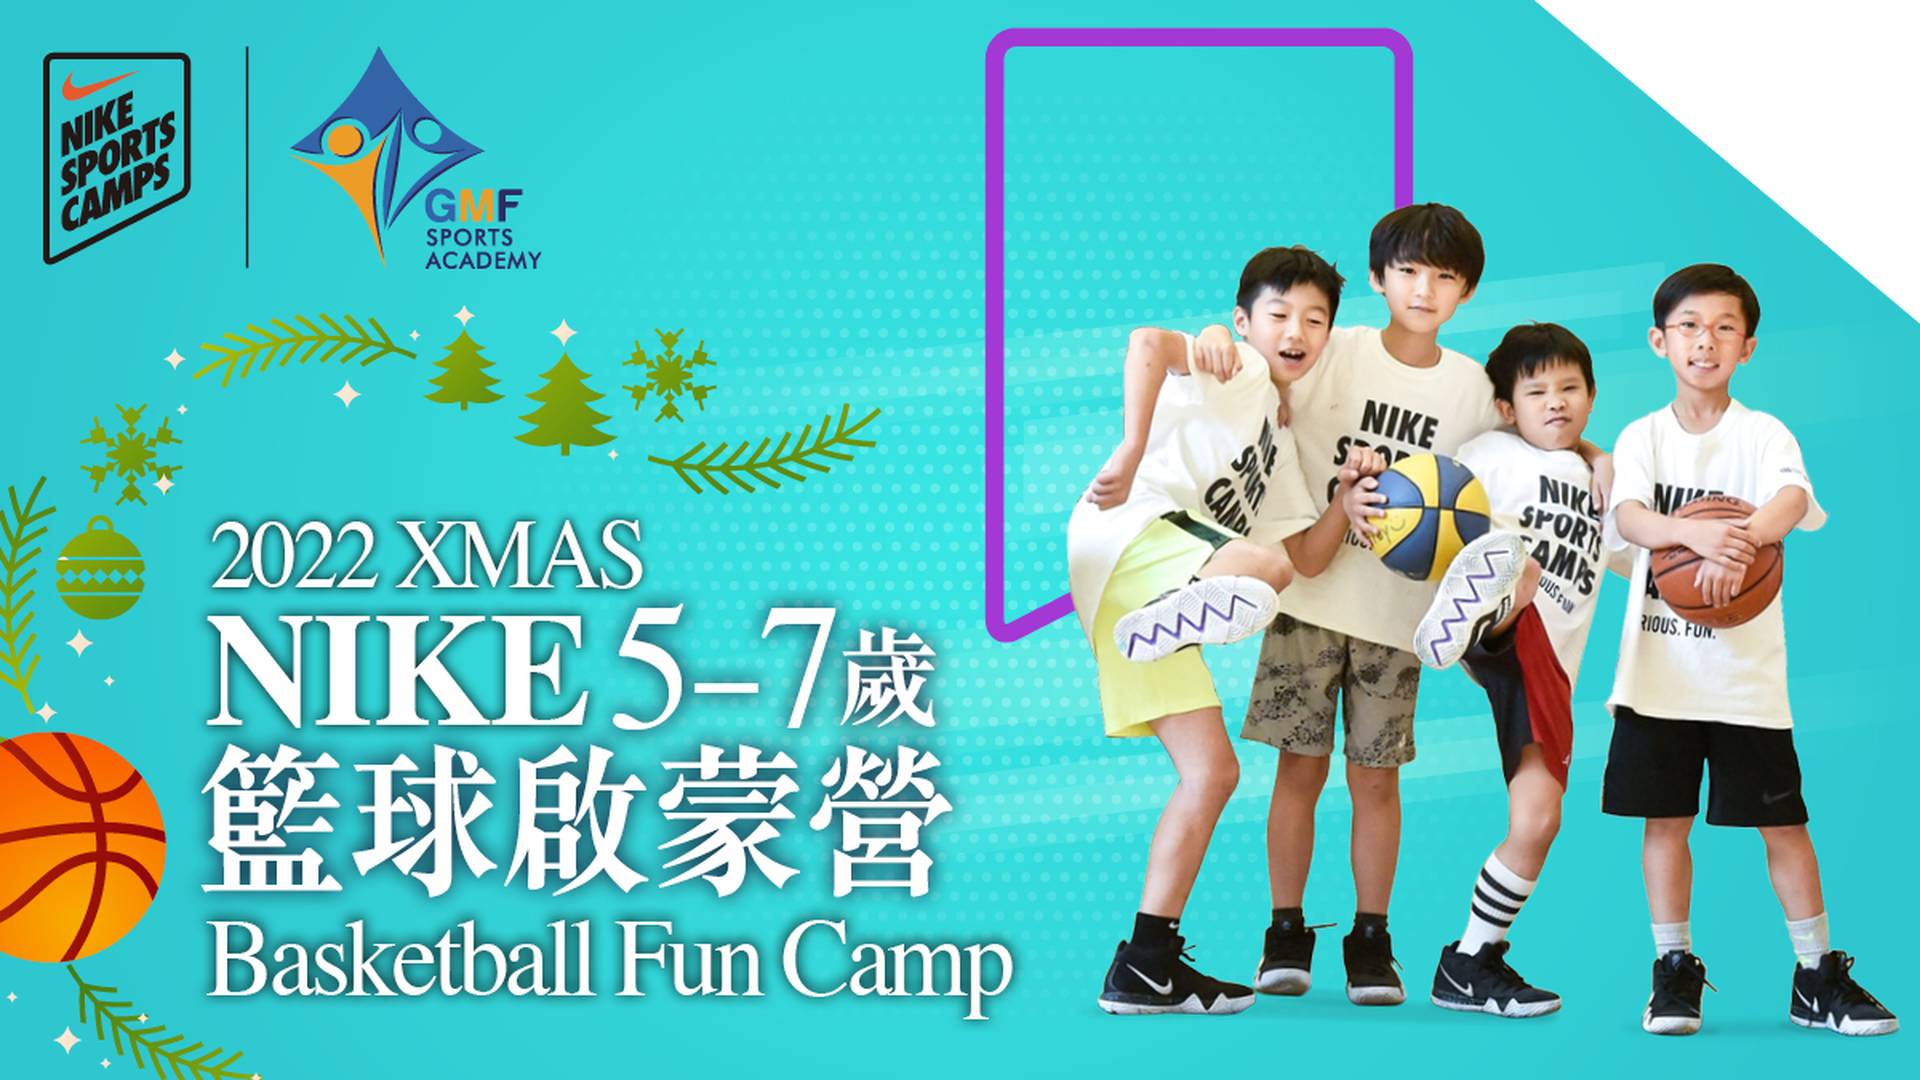 XMAS Nike Basketball Fun Camp  聖誕NIKE 籃球啟蒙營  (5-7歲)